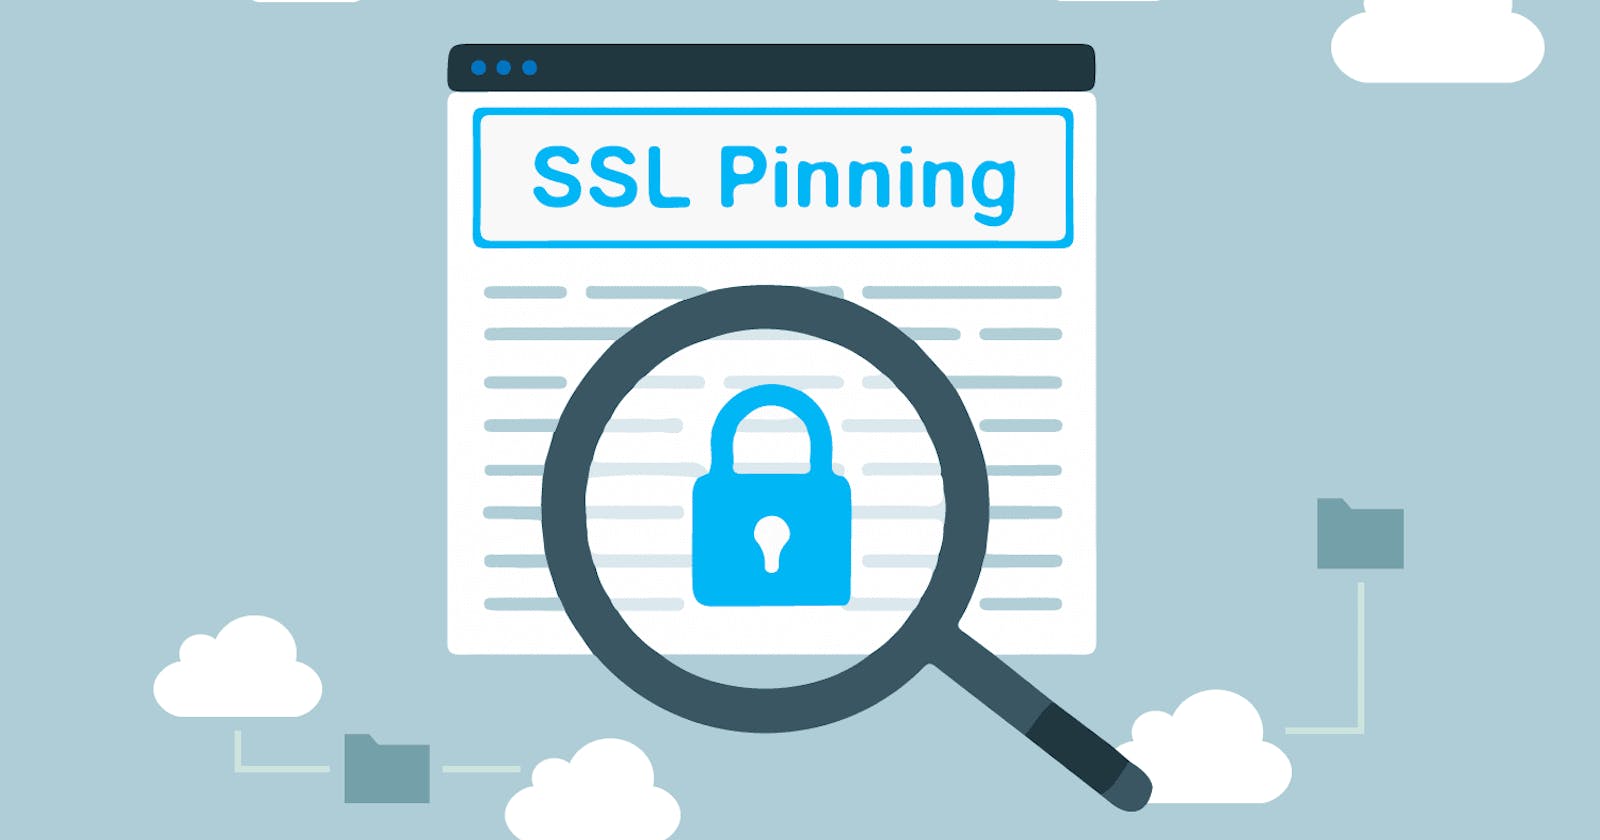 One-click SSL-Pinning Bypass Setup